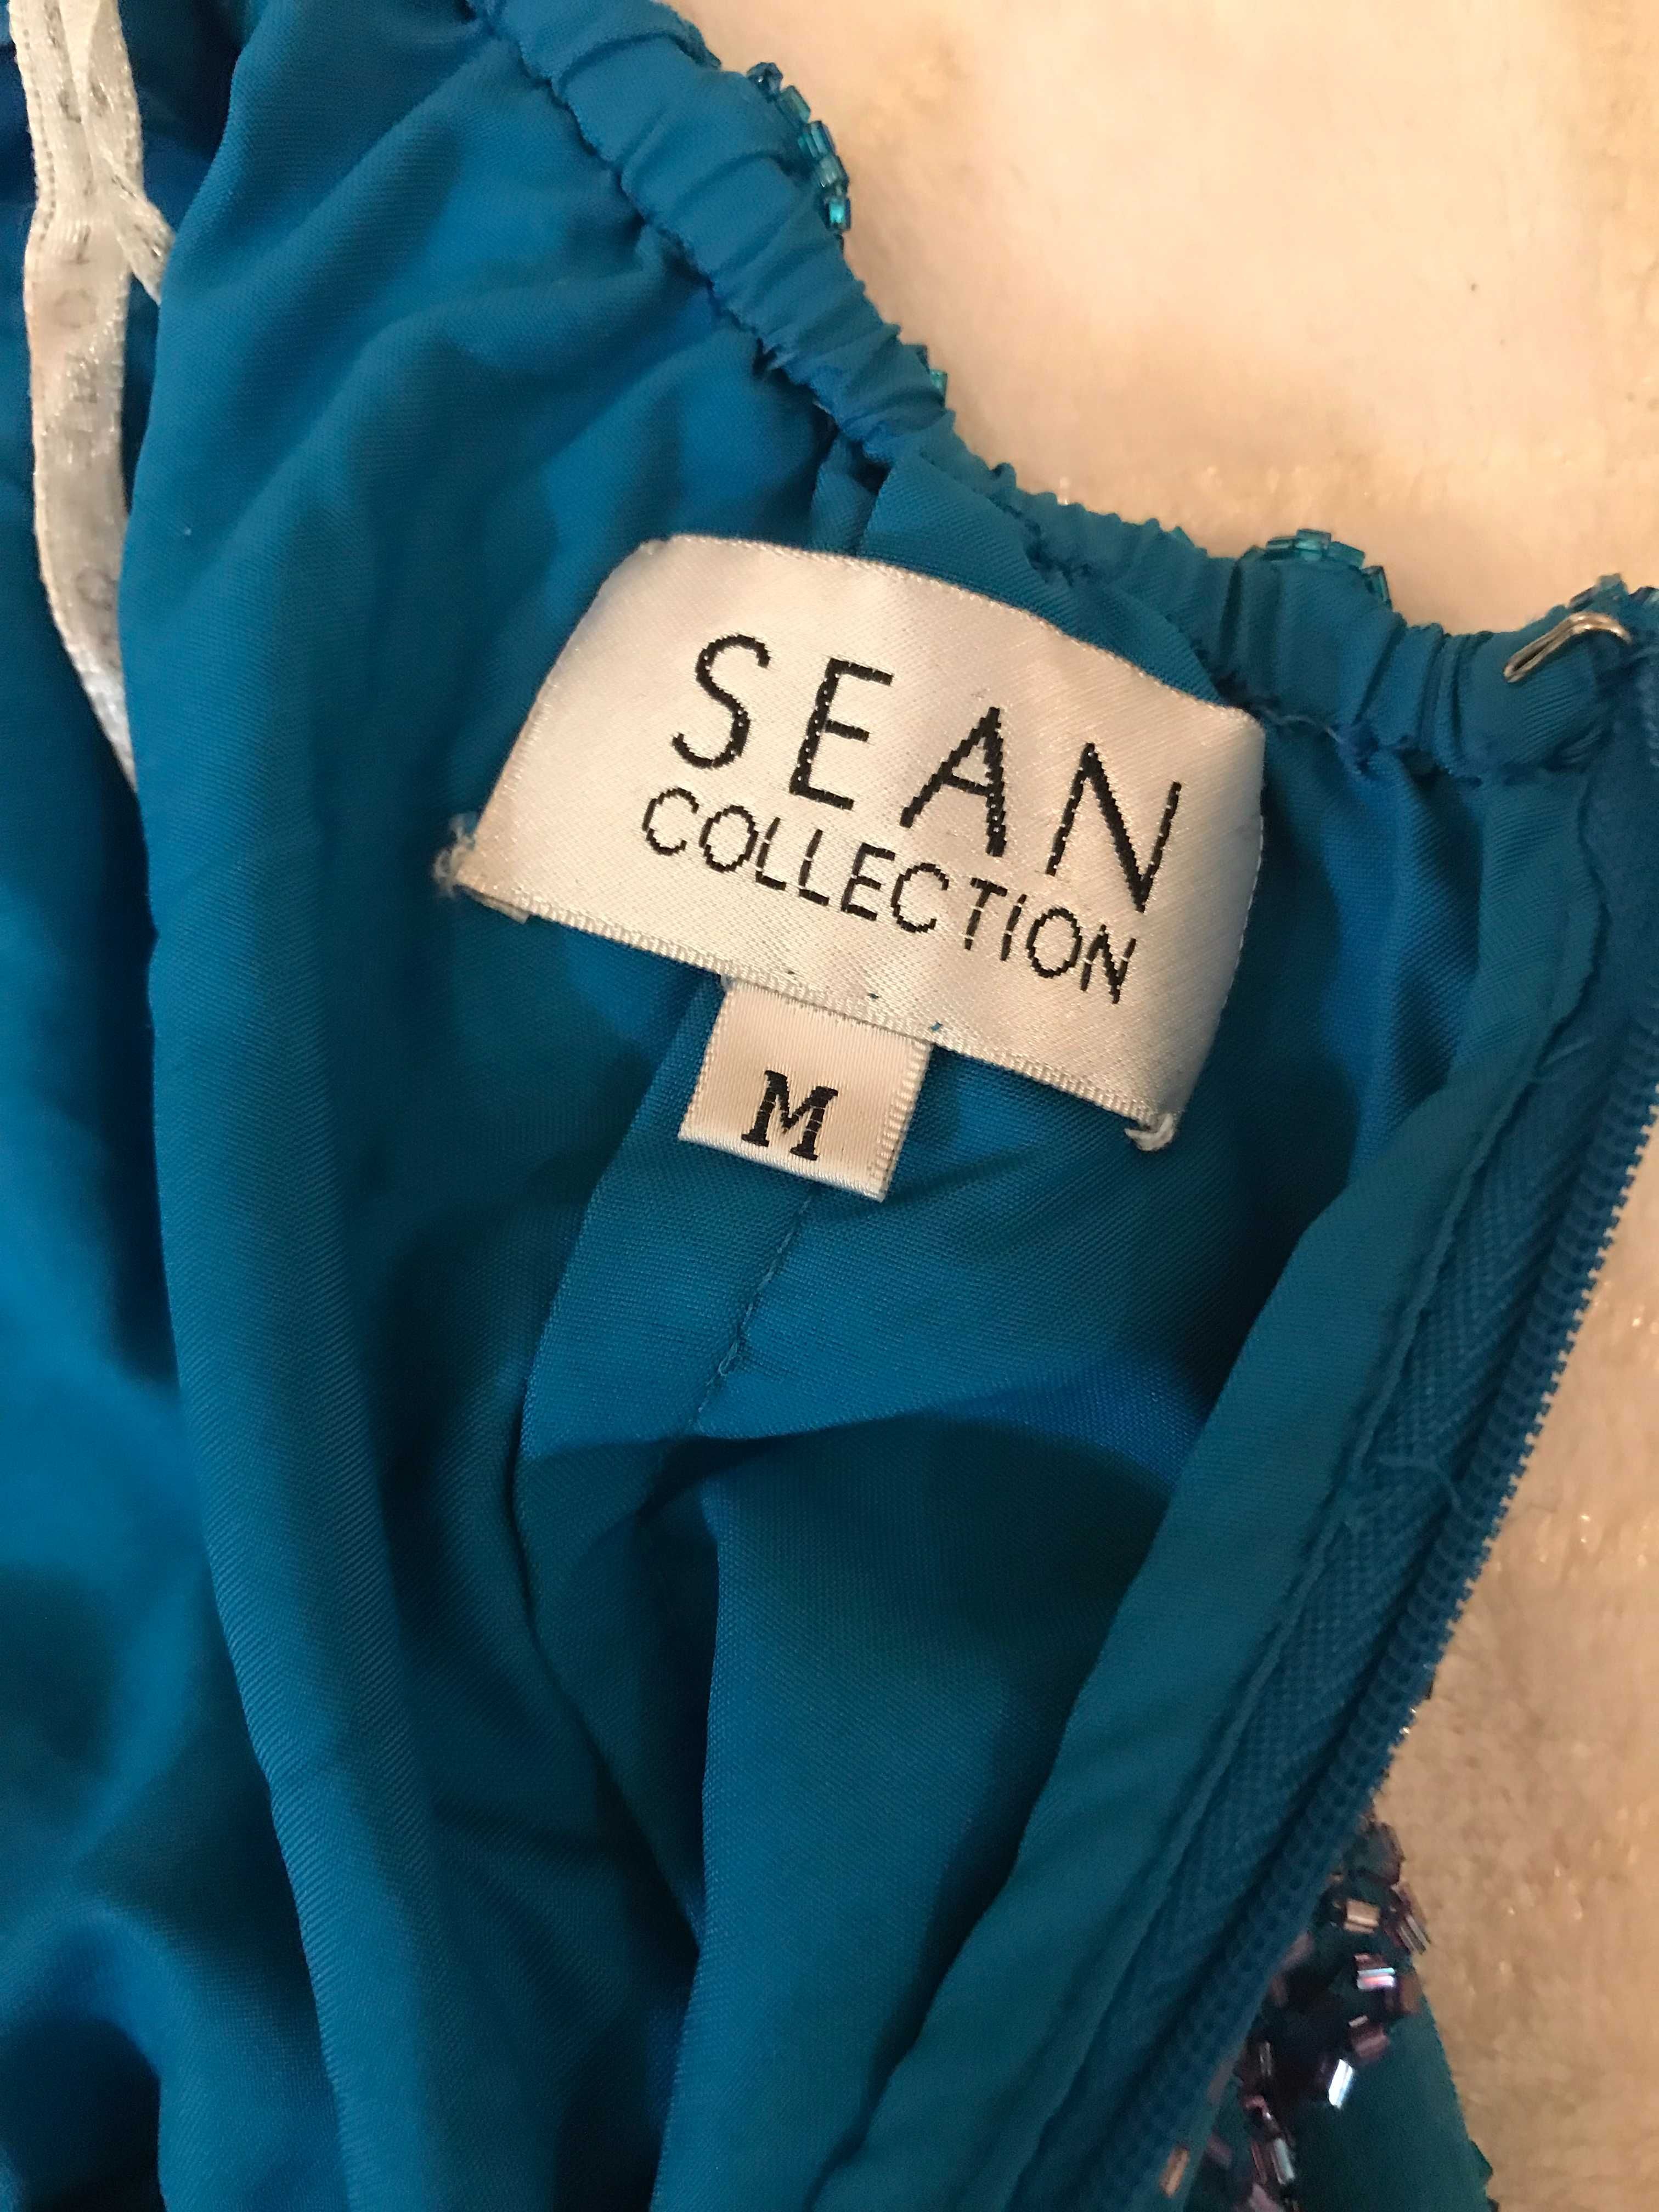 Вечернее платье “Sean collection” р.S.